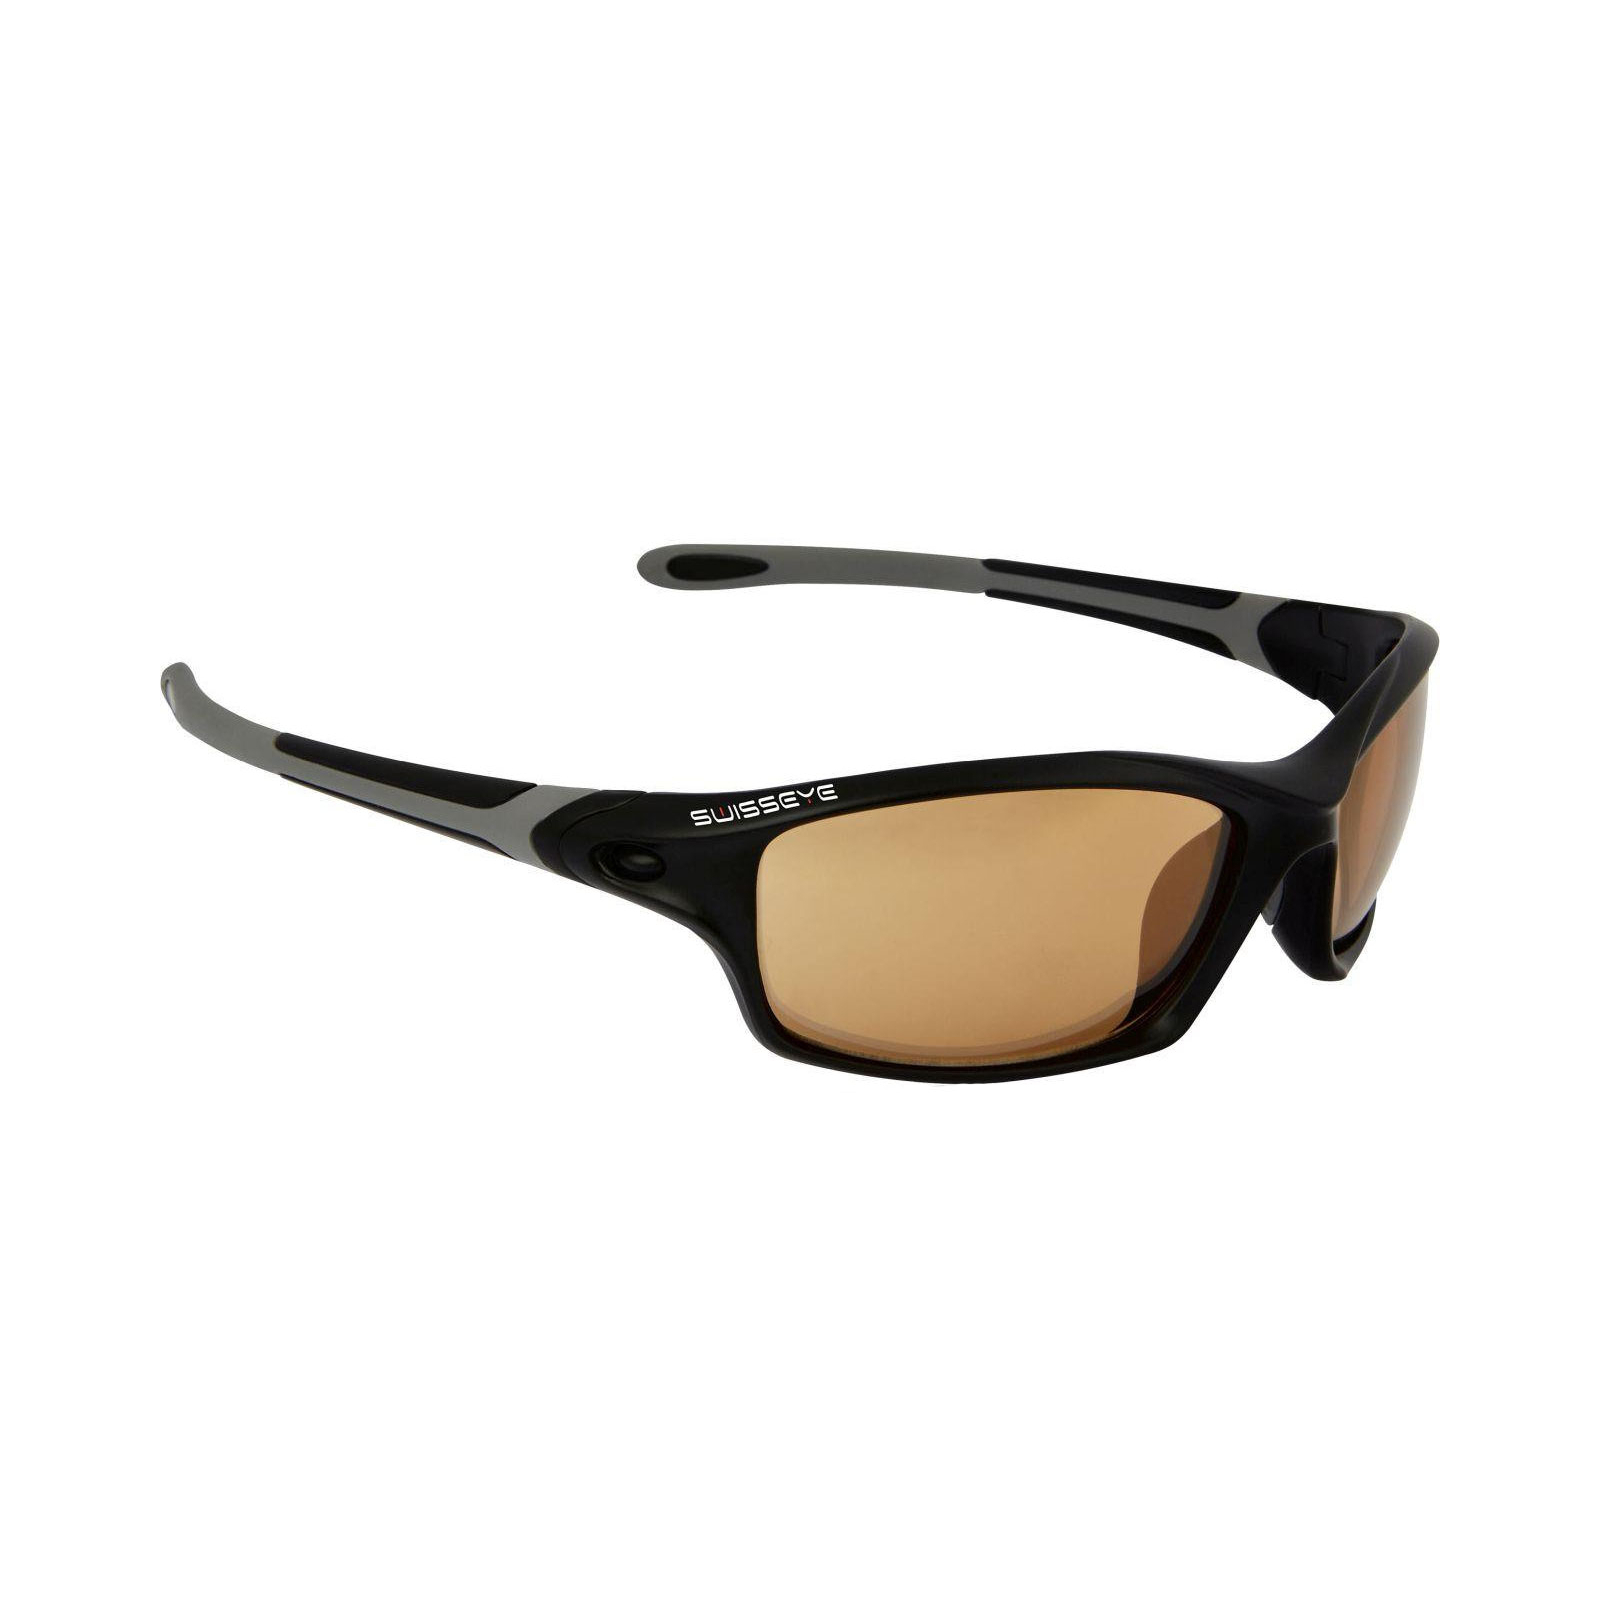 Спортивные очки Swiss Eye GRIP фотохром. линзы черный (12261)